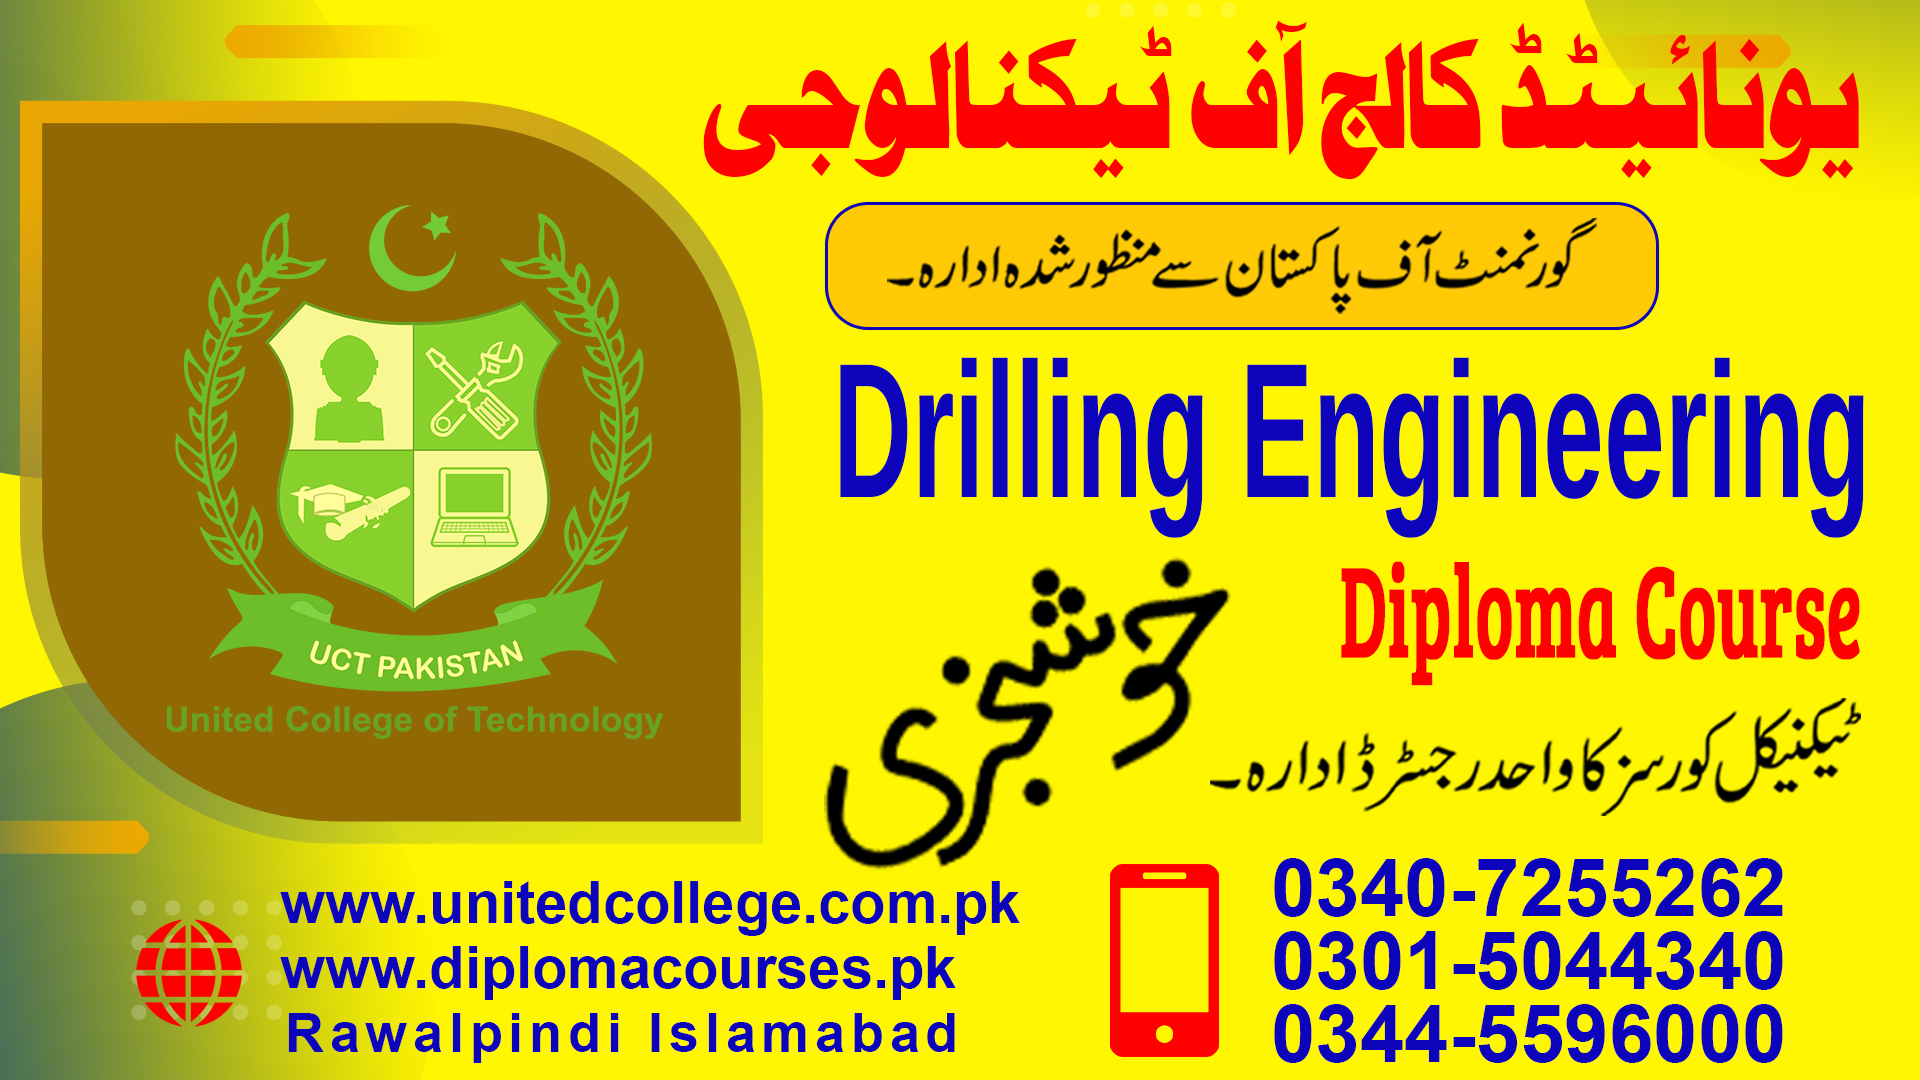 DRILLING ENGINEERING COURSE IN RAWALPINDI ISLAMABAD PAKISTAN